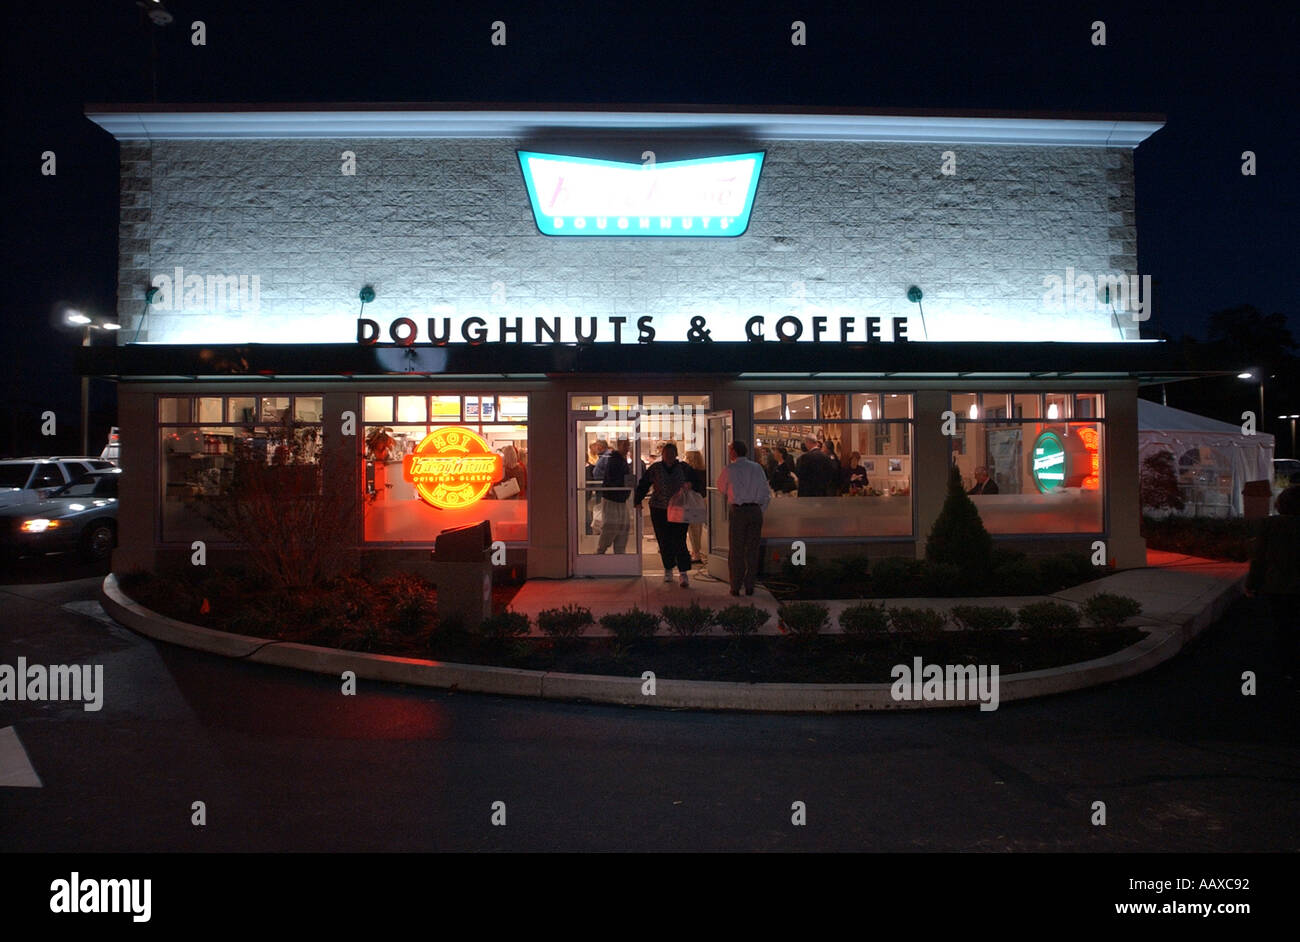 Krispy Kreme la chaîne avec la marque signe rouge maintenant sex donuts Banque D'Images